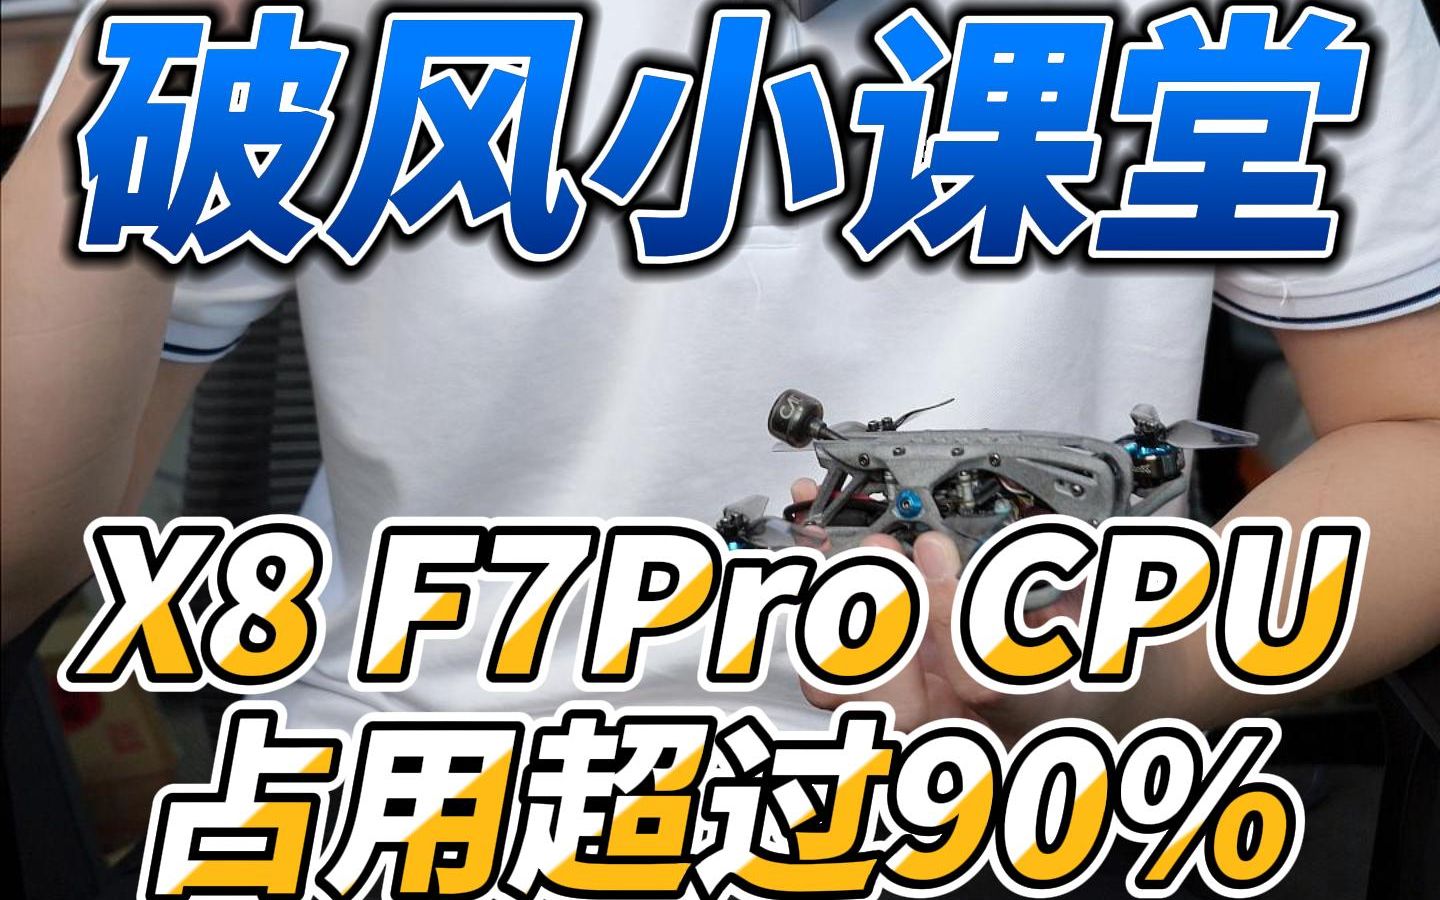 X8 F7Pro CPU占用超过90%